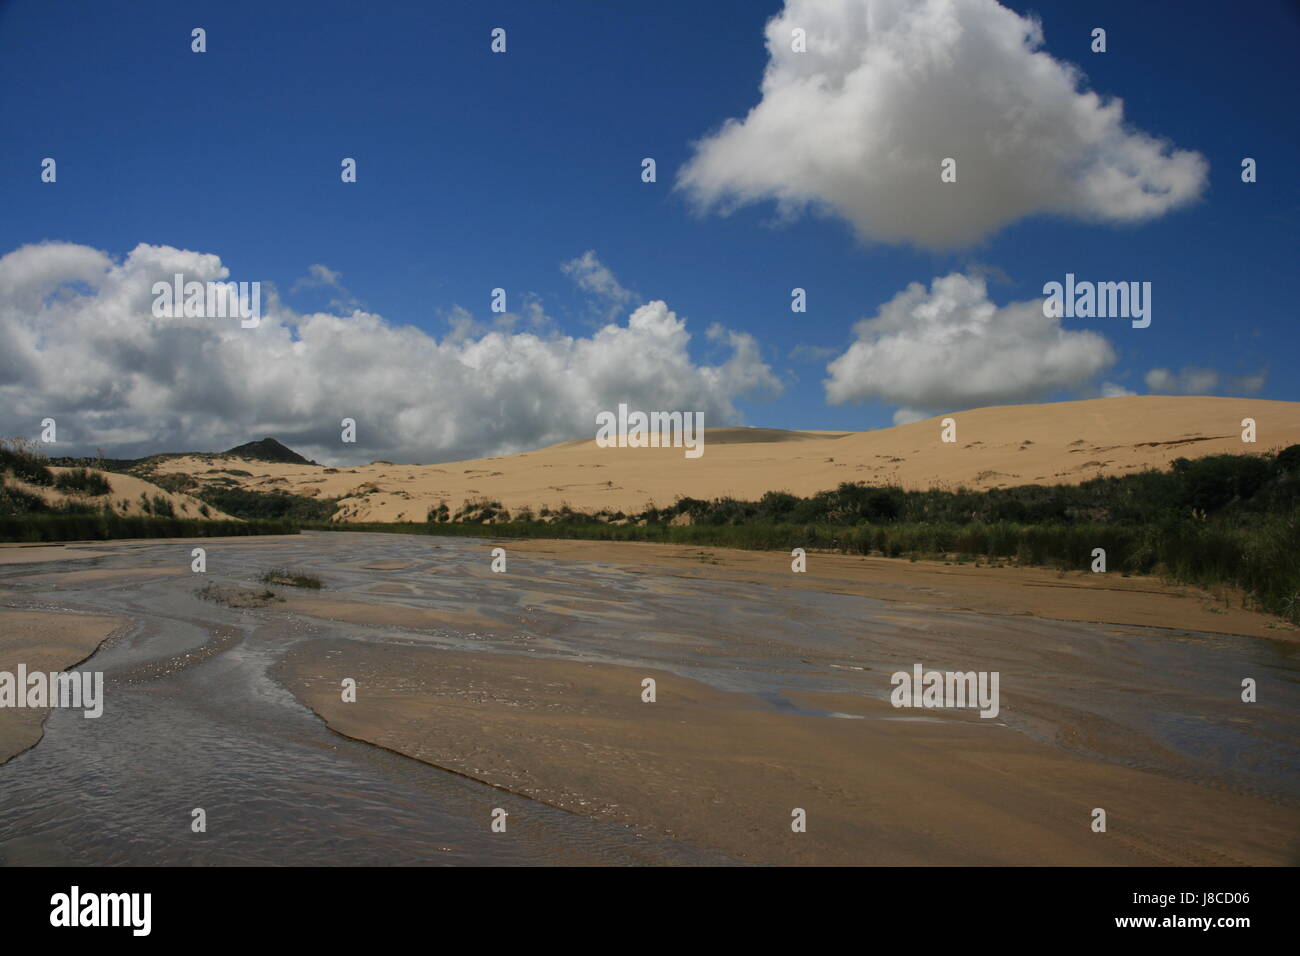 hill, cloud, new zealand, dune, sands, sand, hill, green, cloud, beach, Stock Photo